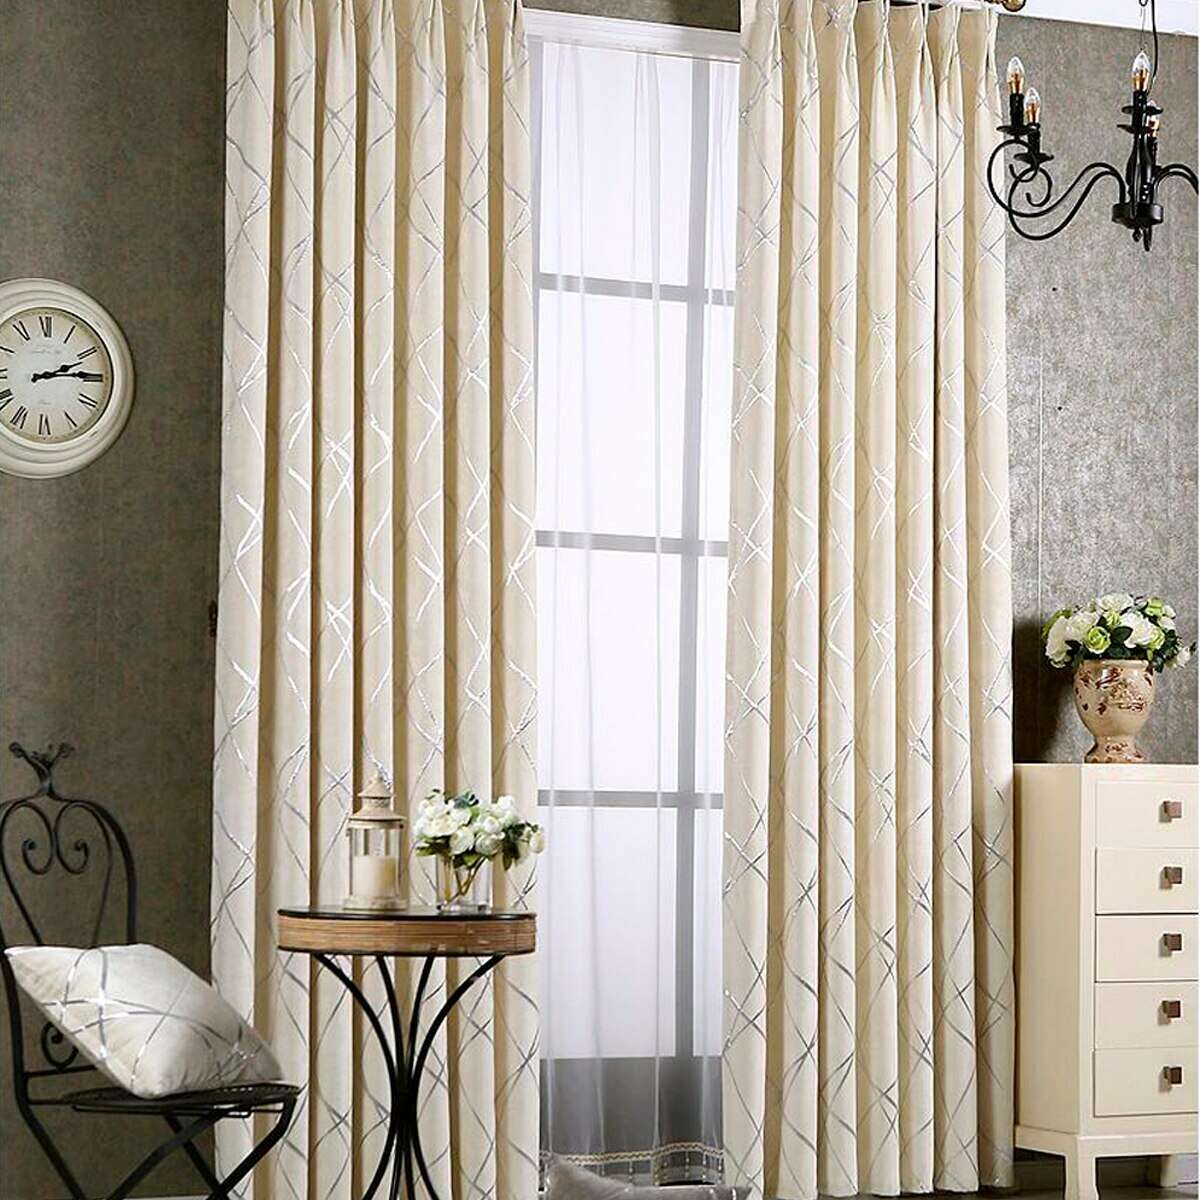 Zoey American Modern Luxury Stripe Pattern Blackout Curtain - Ivory / Biege